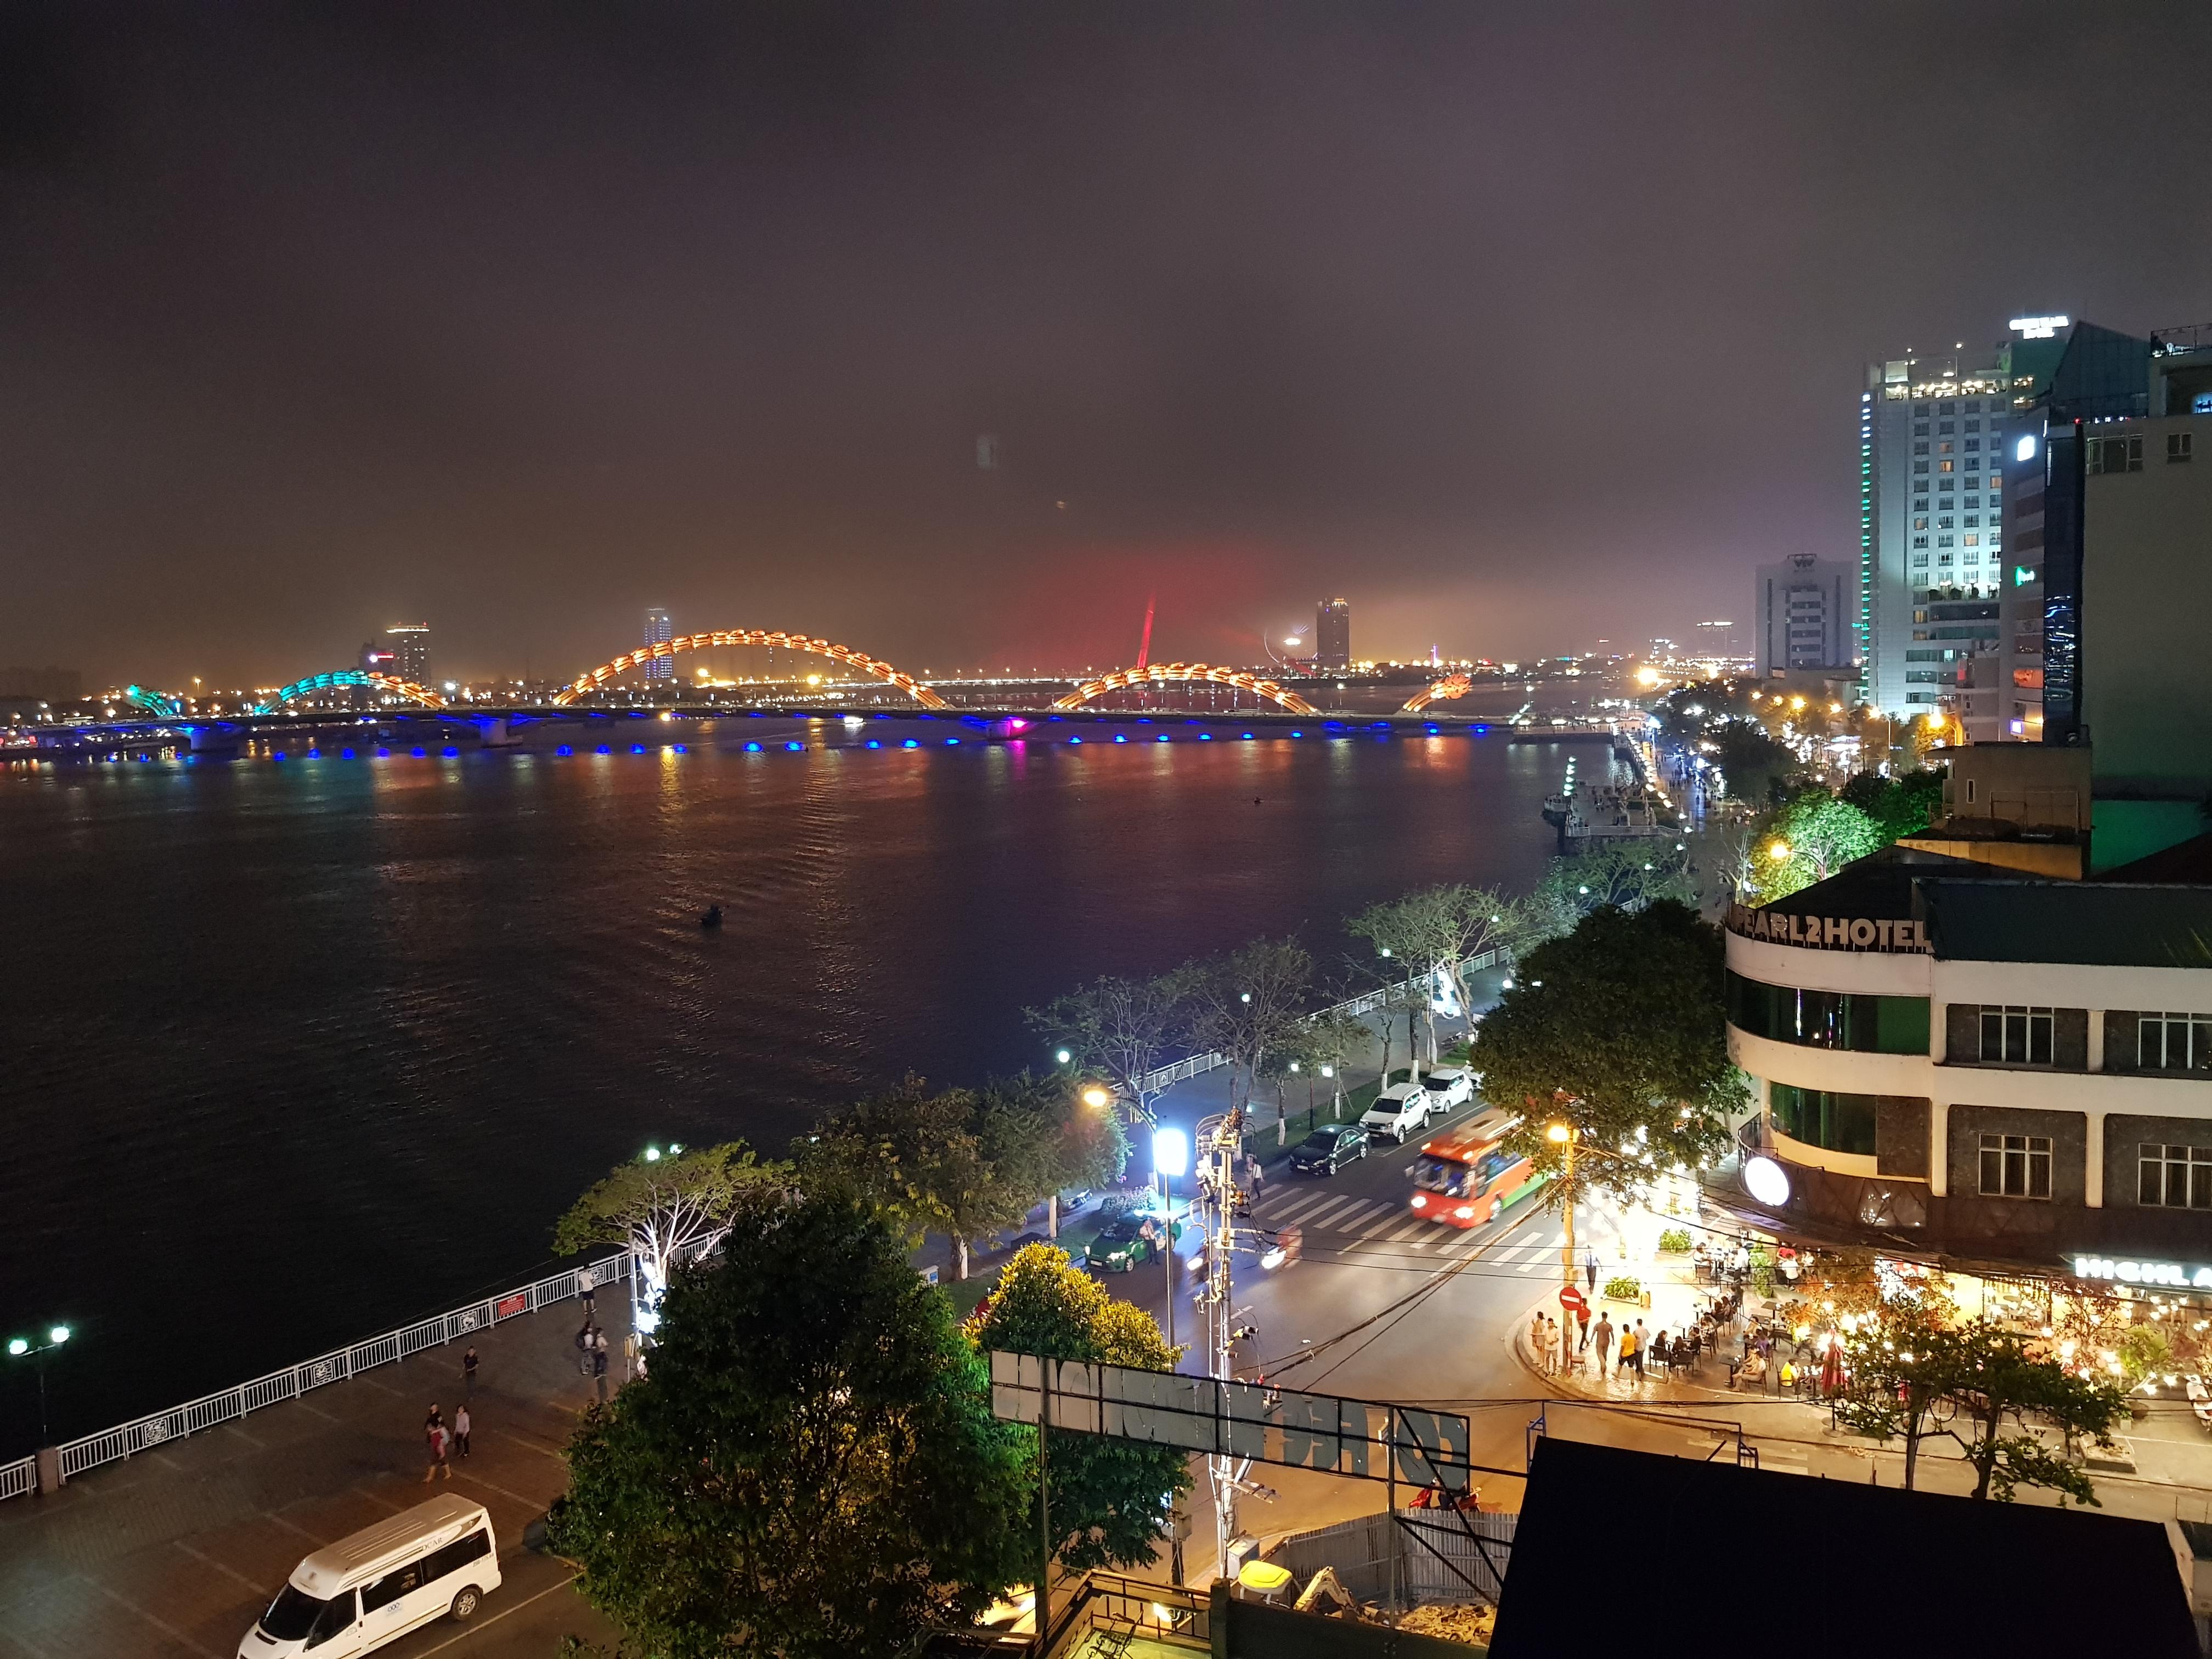 Khung cảnh thành phố nhìn từ khách sạn đường Bạch Đằng Đà Nẵng